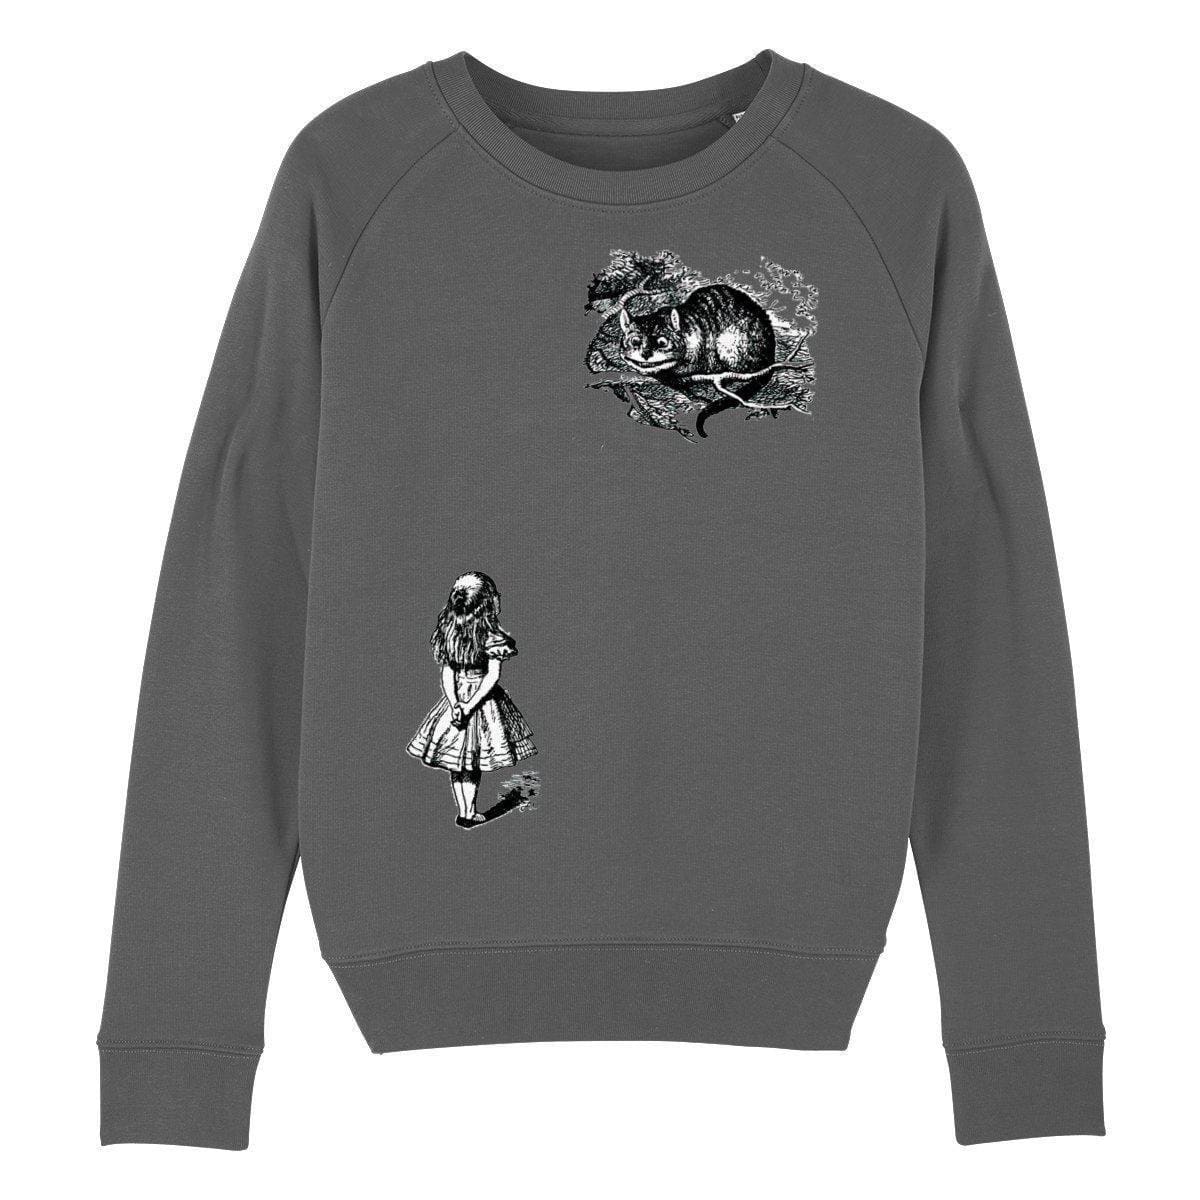 Women's Organic Cotton Cheshire Cat Sweater